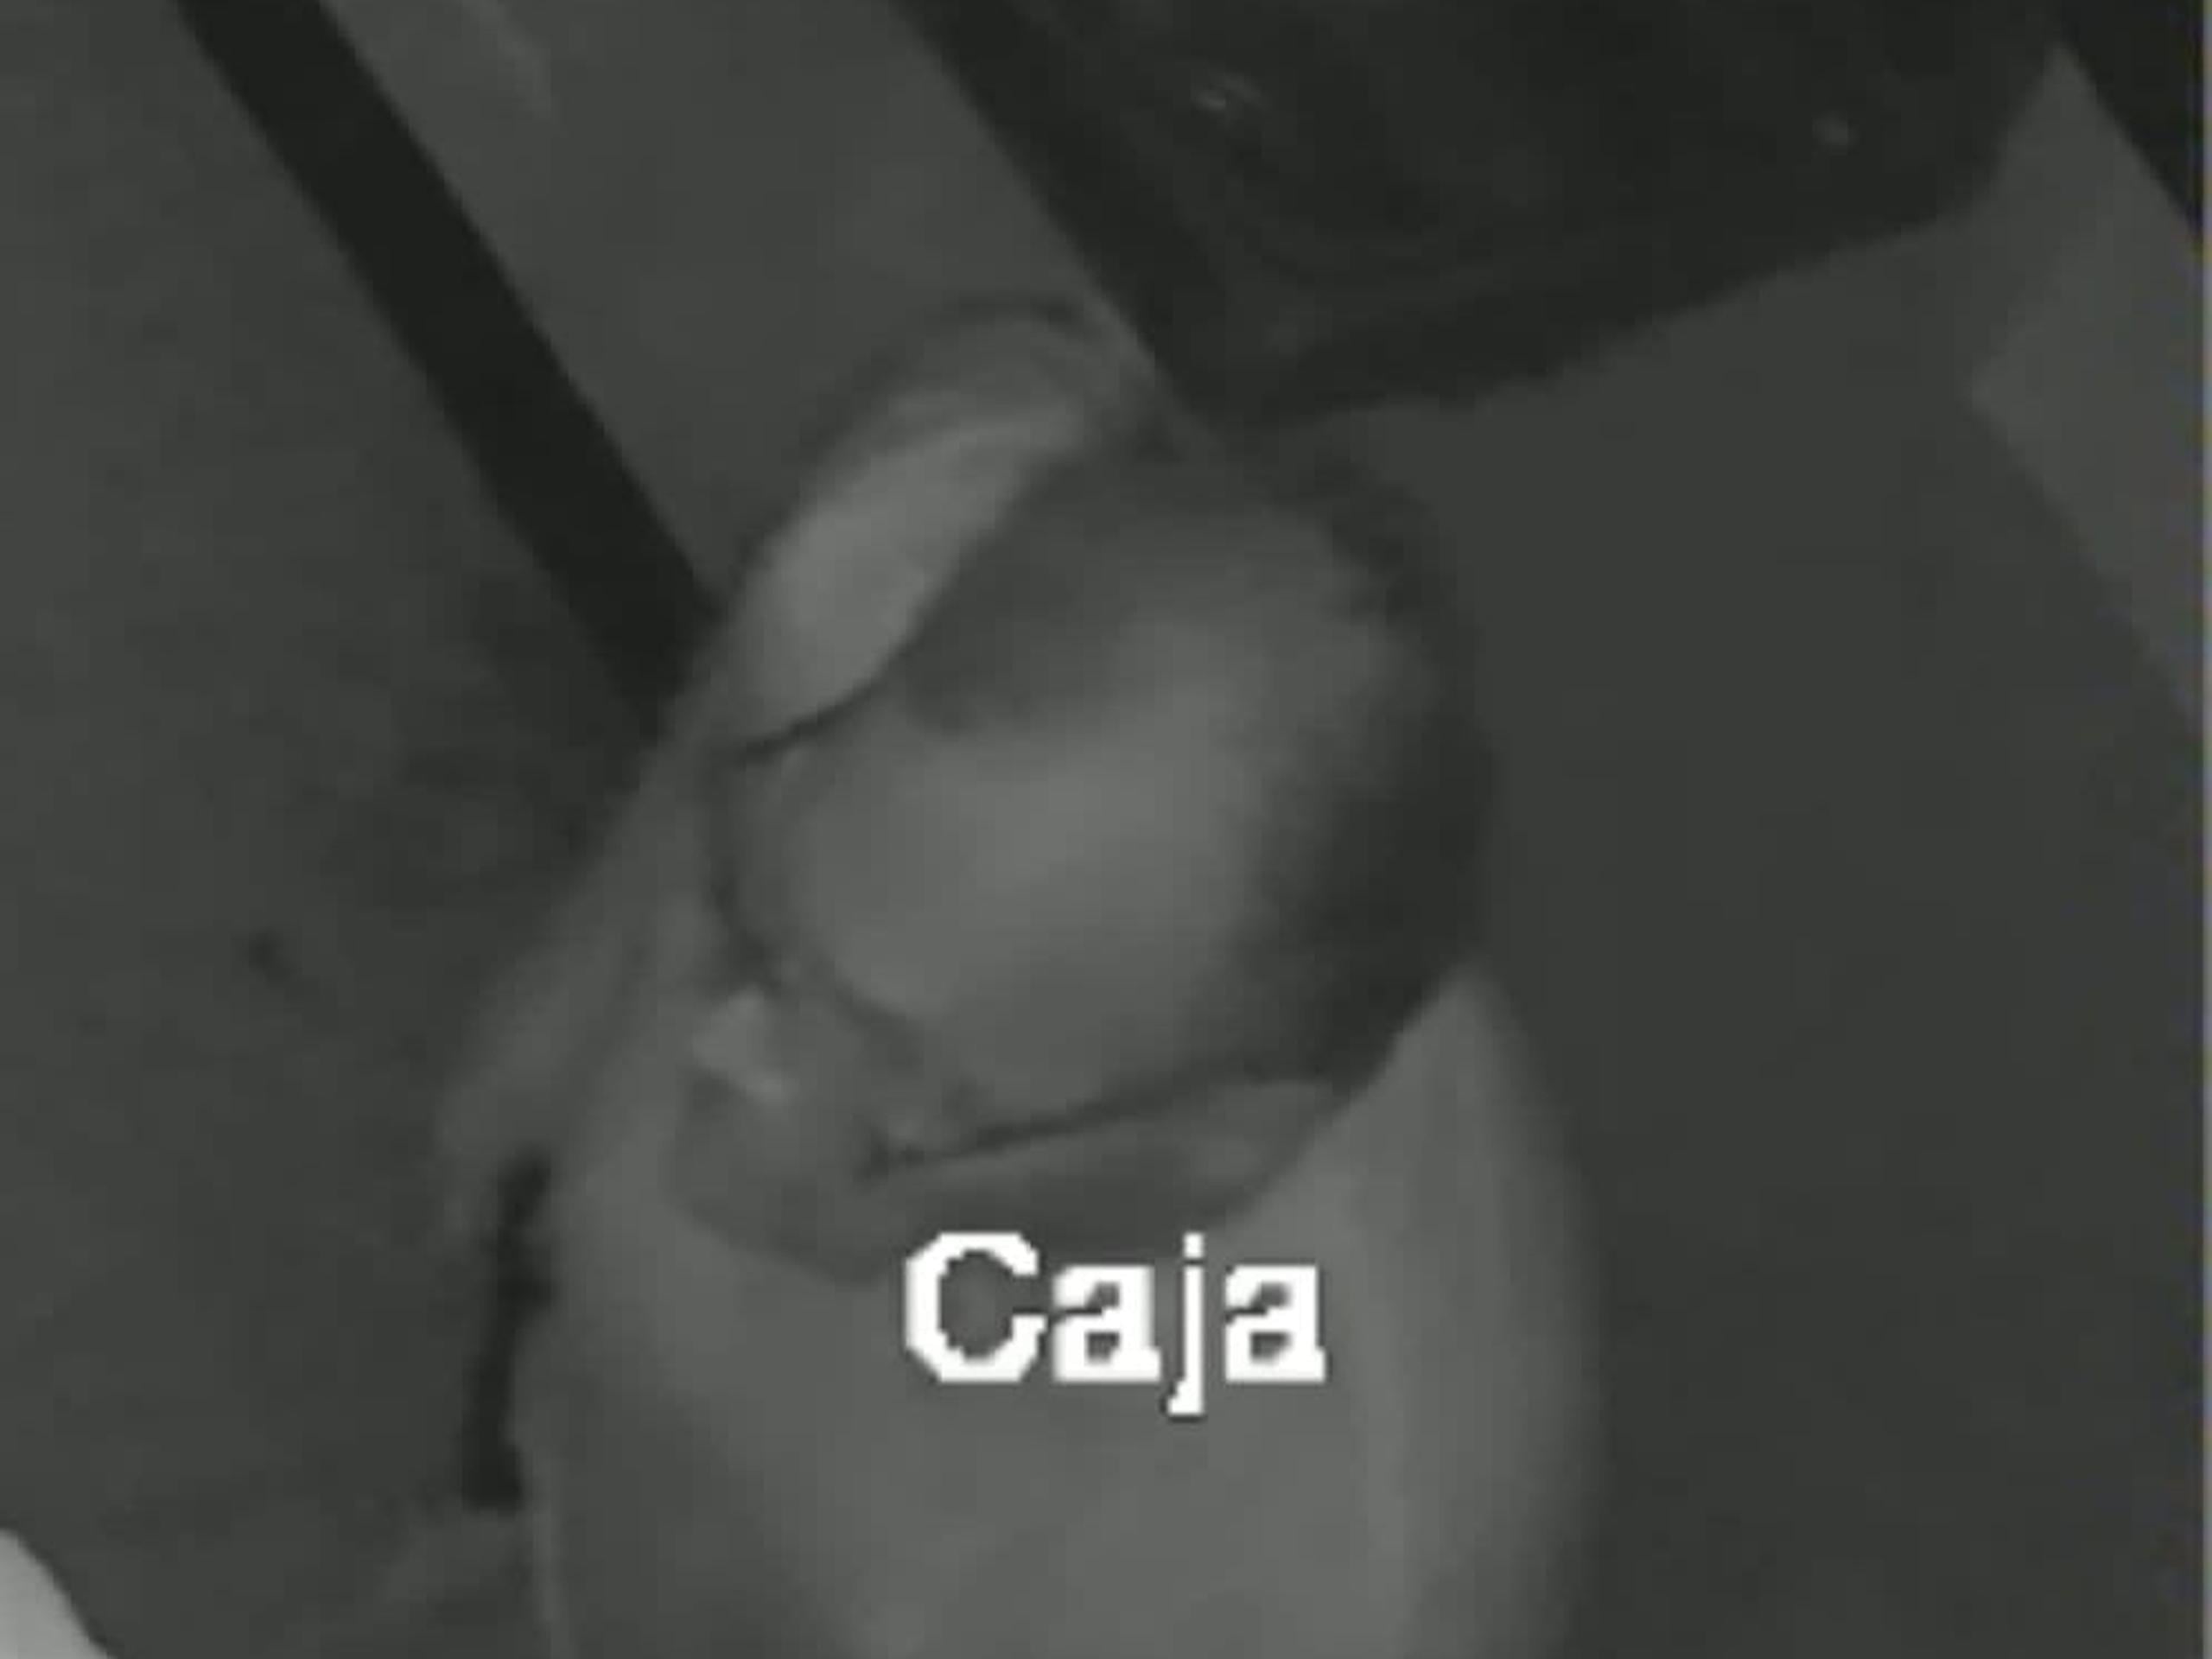 La imágen del sospechoso fue captada por las cámaras de seguridad del restaurante de comida rápida Subway, localizado en la urbanización San Salvador en Manatí.